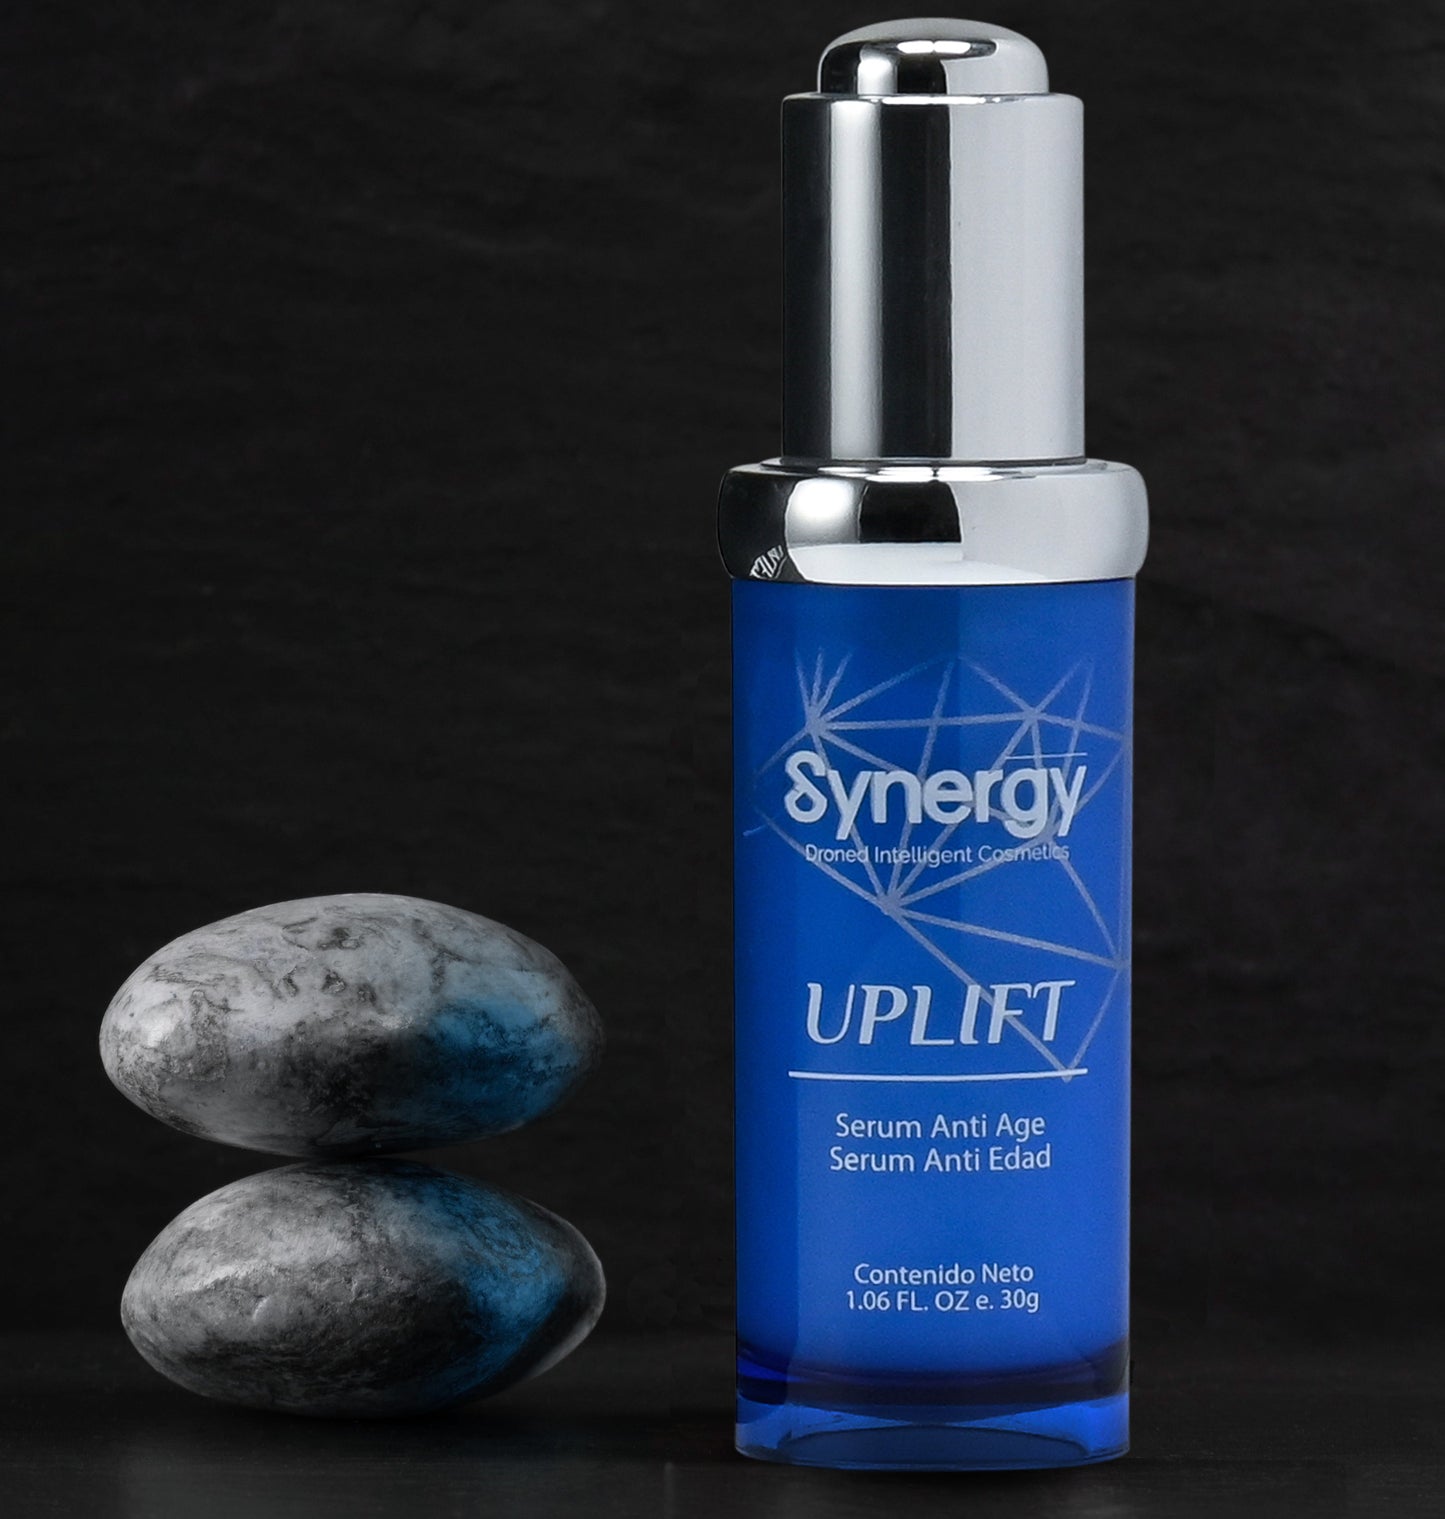 Synergy Uplift Serum facial antienvejecimiento y antiarrugas